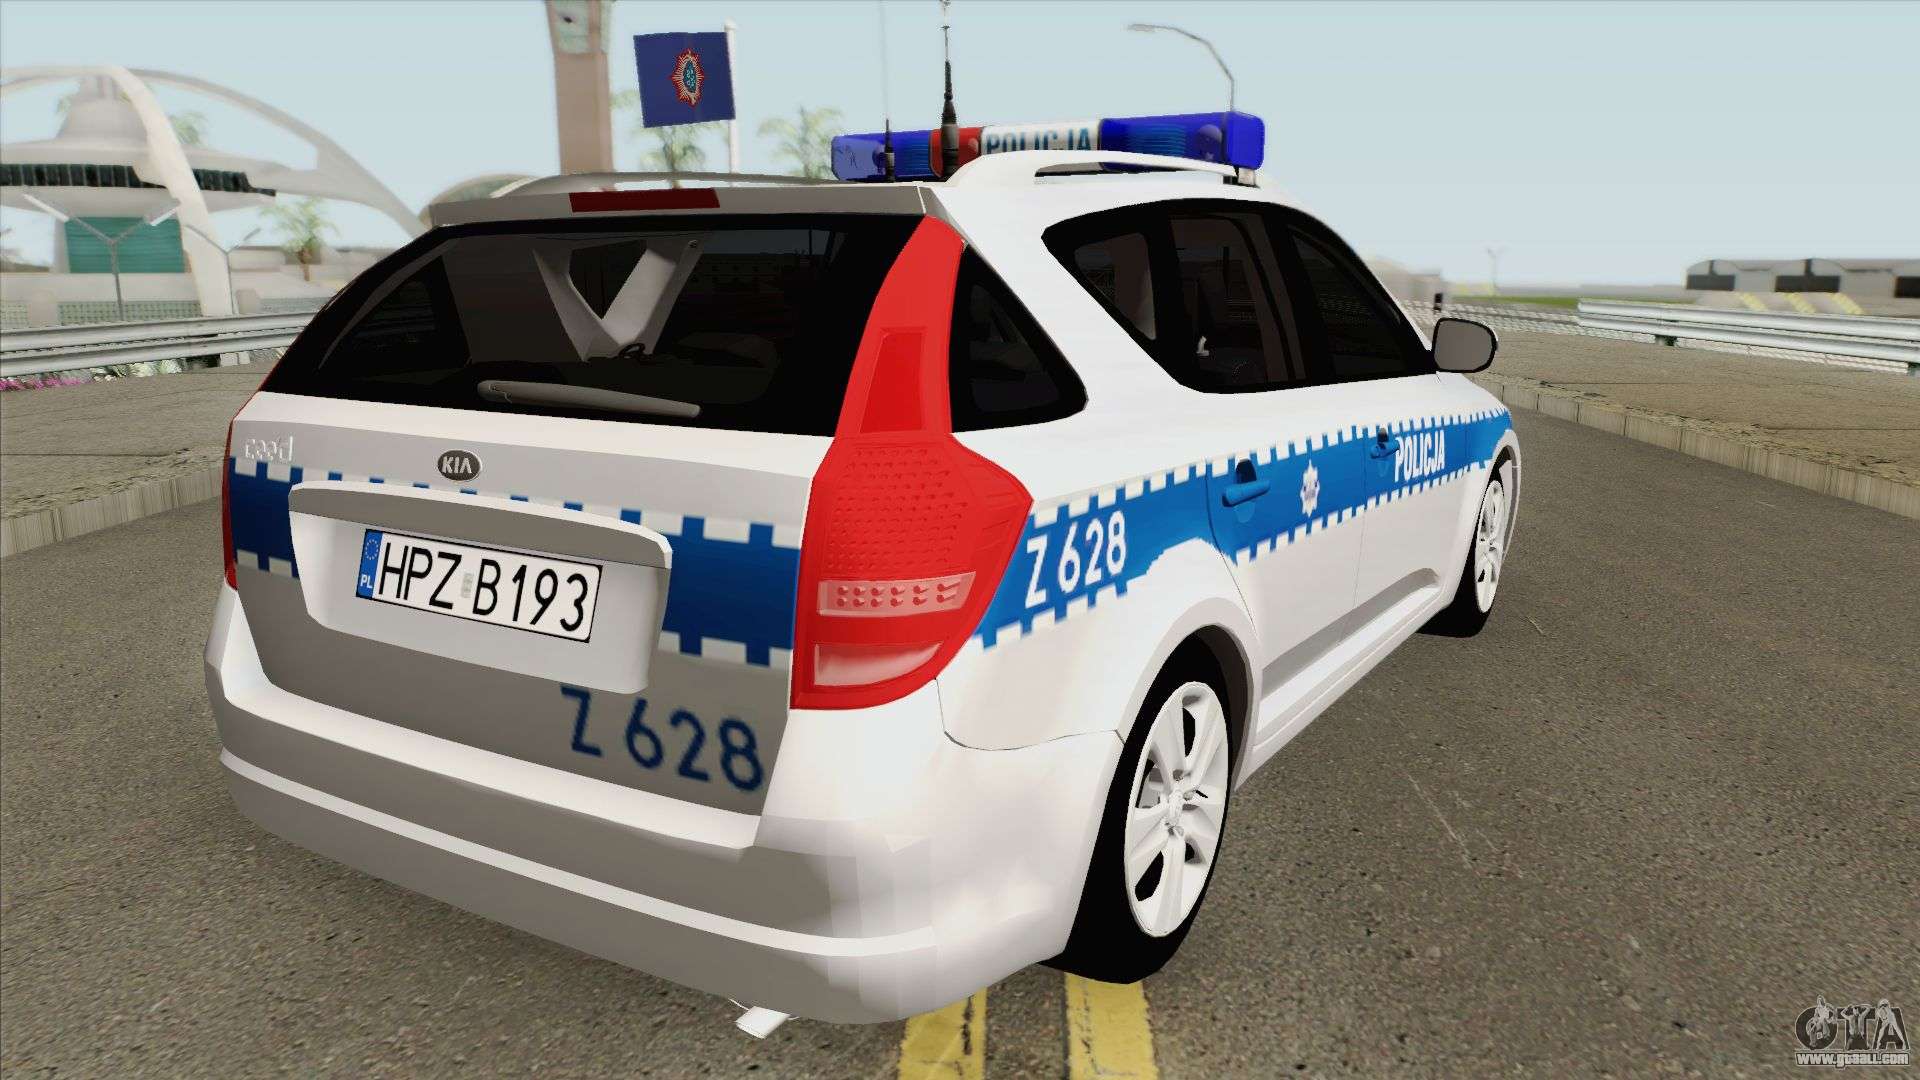 Kia Ceed SW I (Policja KSP Warszawa) for GTA San Andreas